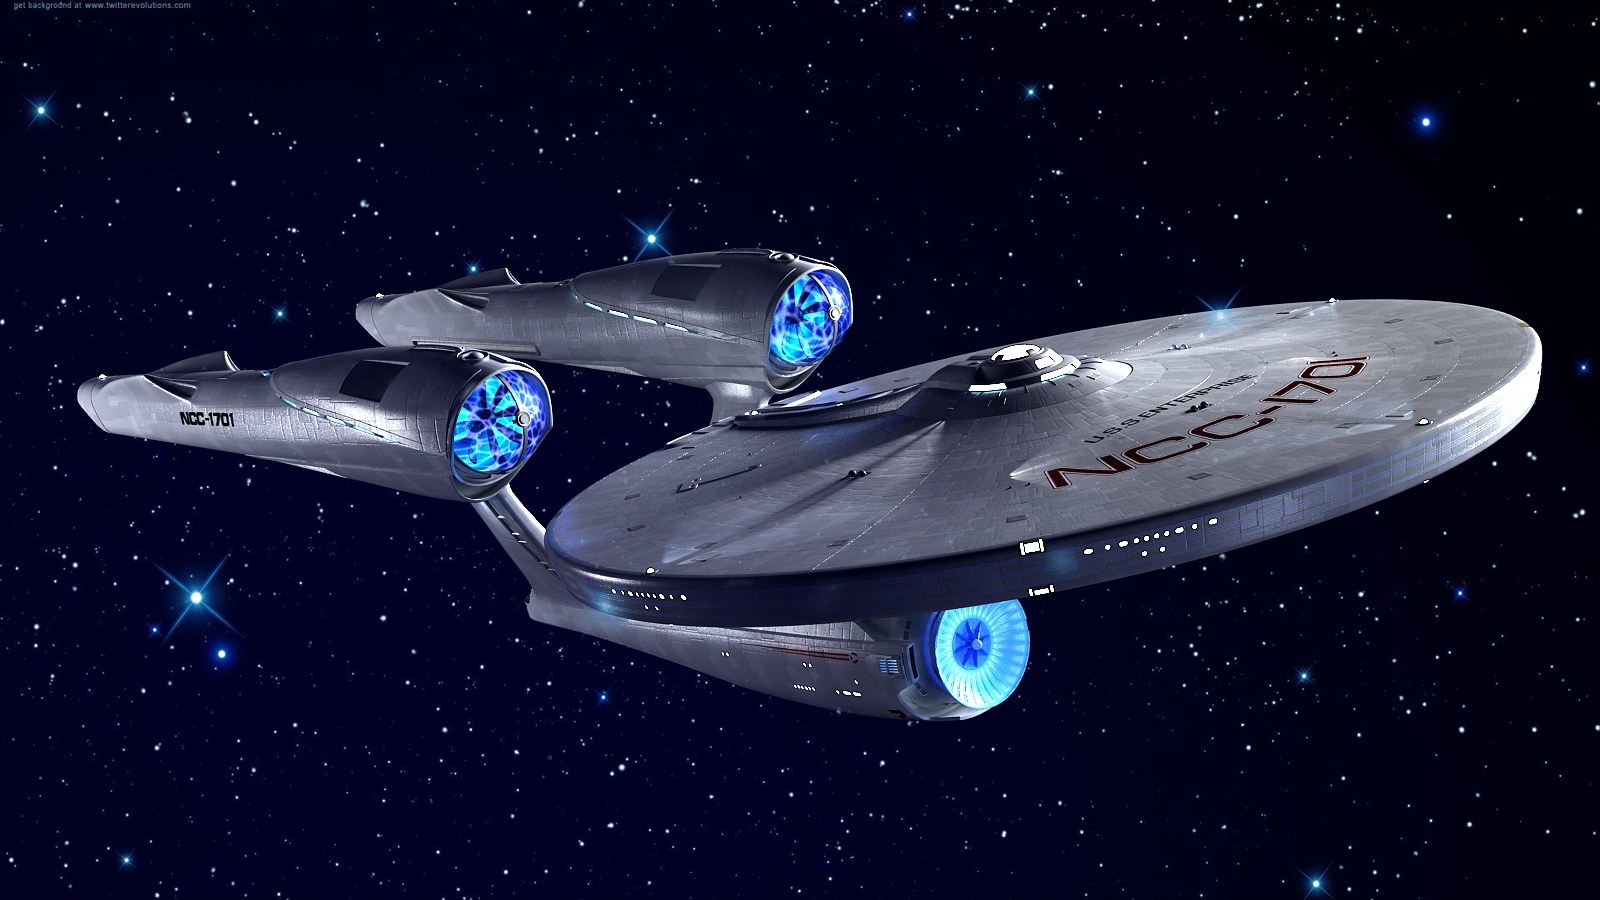 Star Trek Enterprise Ncc 1701 - HD Wallpaper 